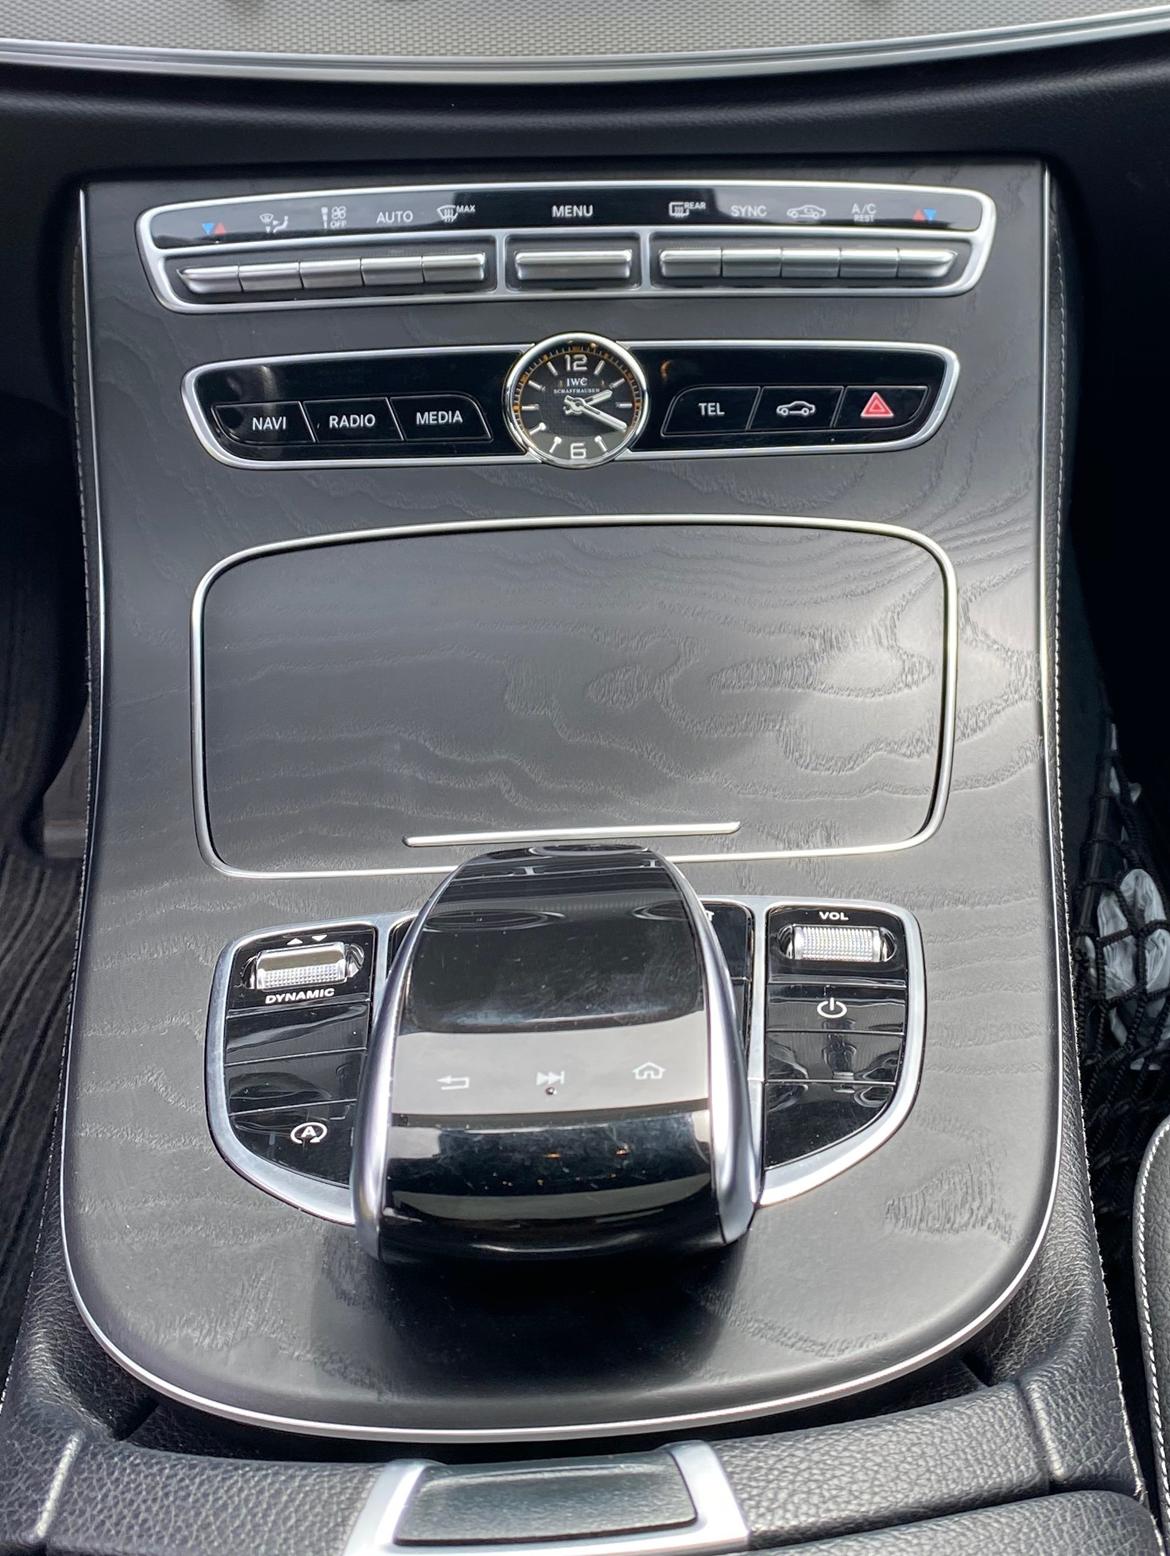 Mercedes Benz E220d Avantgarde (W213) - Sort åbenporet asketræ og IWC ur billede 6